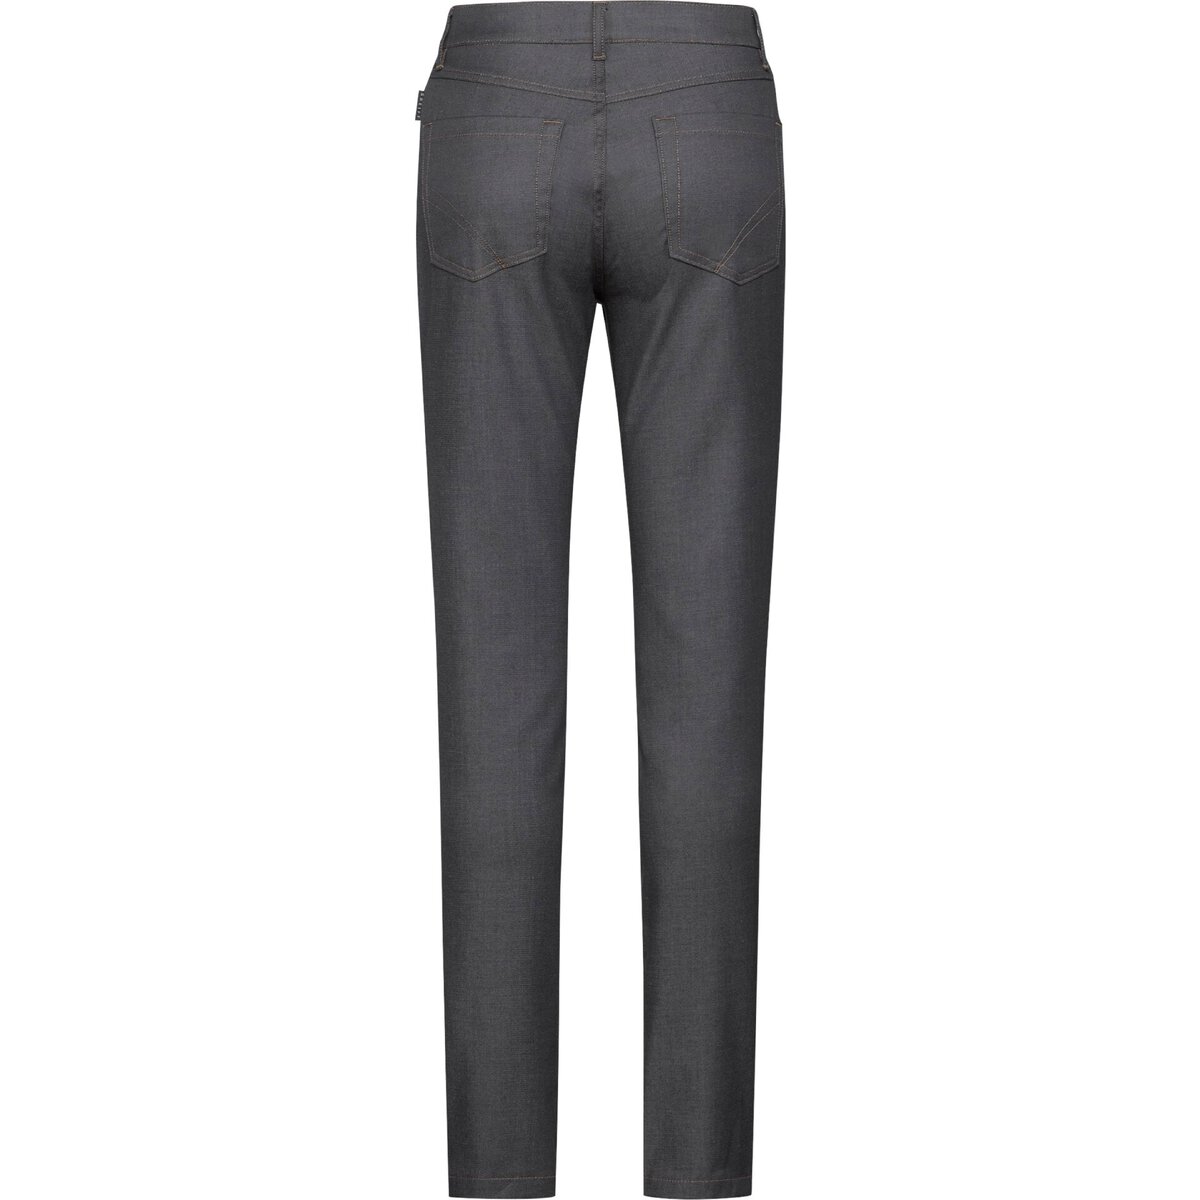 Damen-Kochhose Jeans-Style Größe 36 (1)